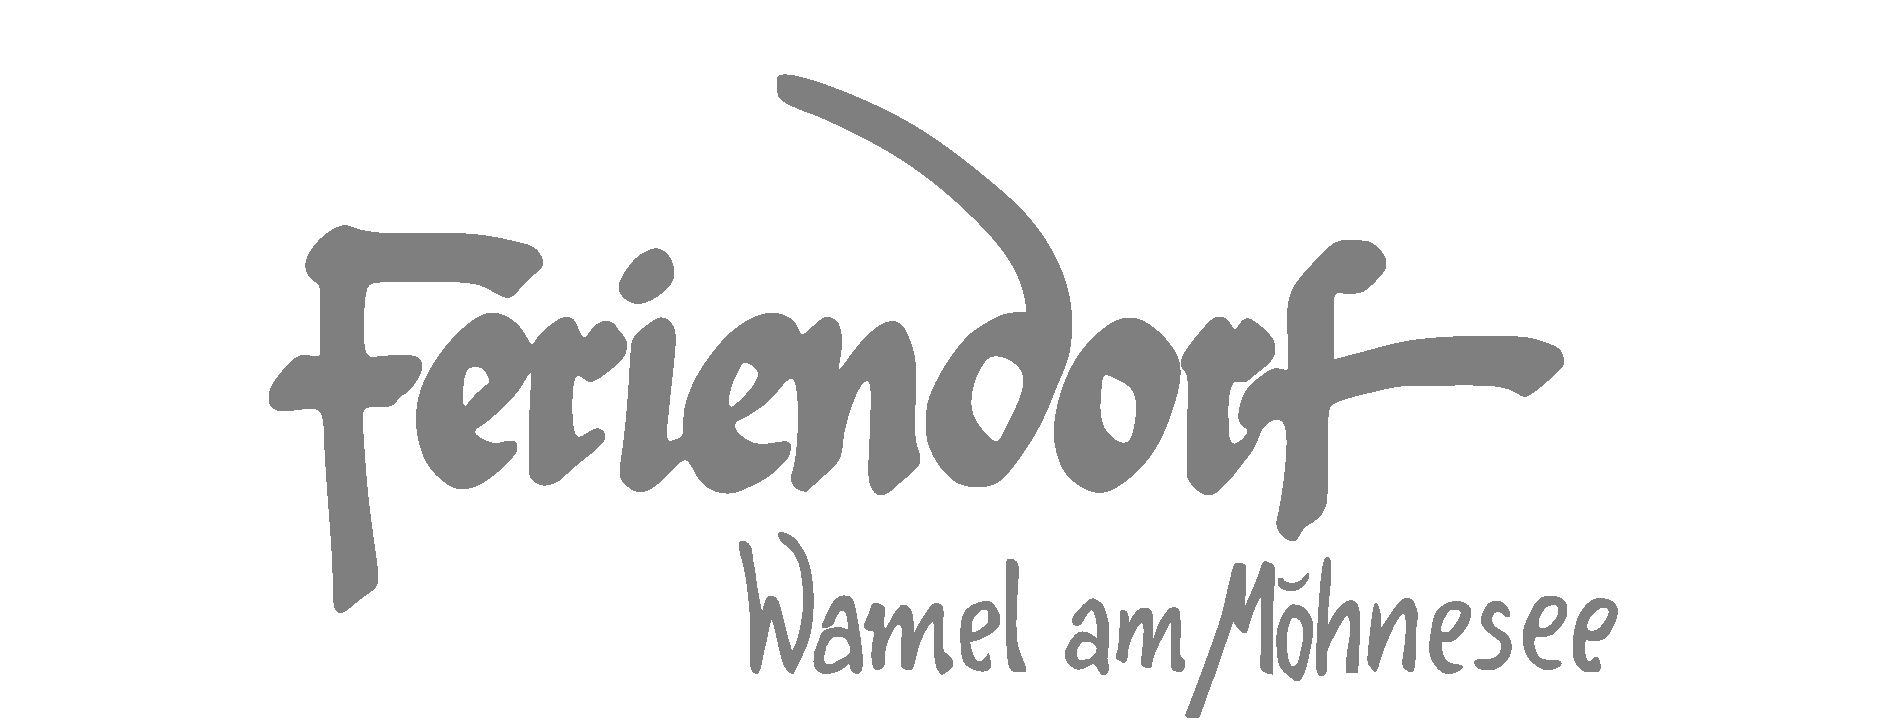 Feriendorf Wamel logo